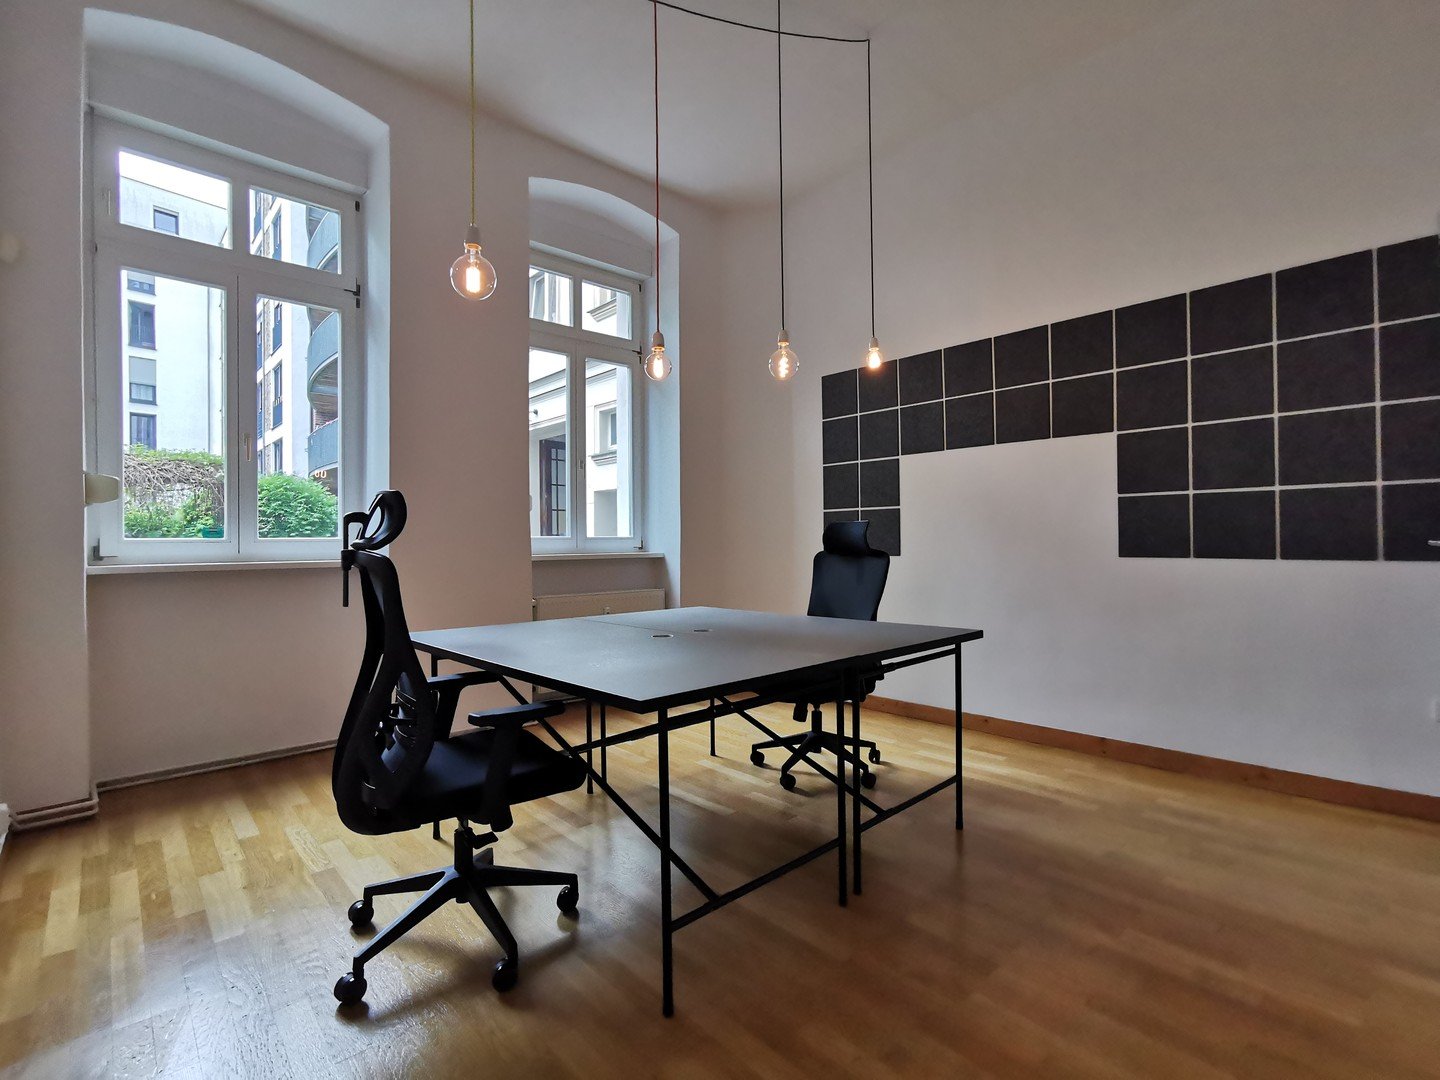 All-Inkl. Untermiete Büro im Prenzlauer Berg | 2-Räume inkl. Bad + Küche